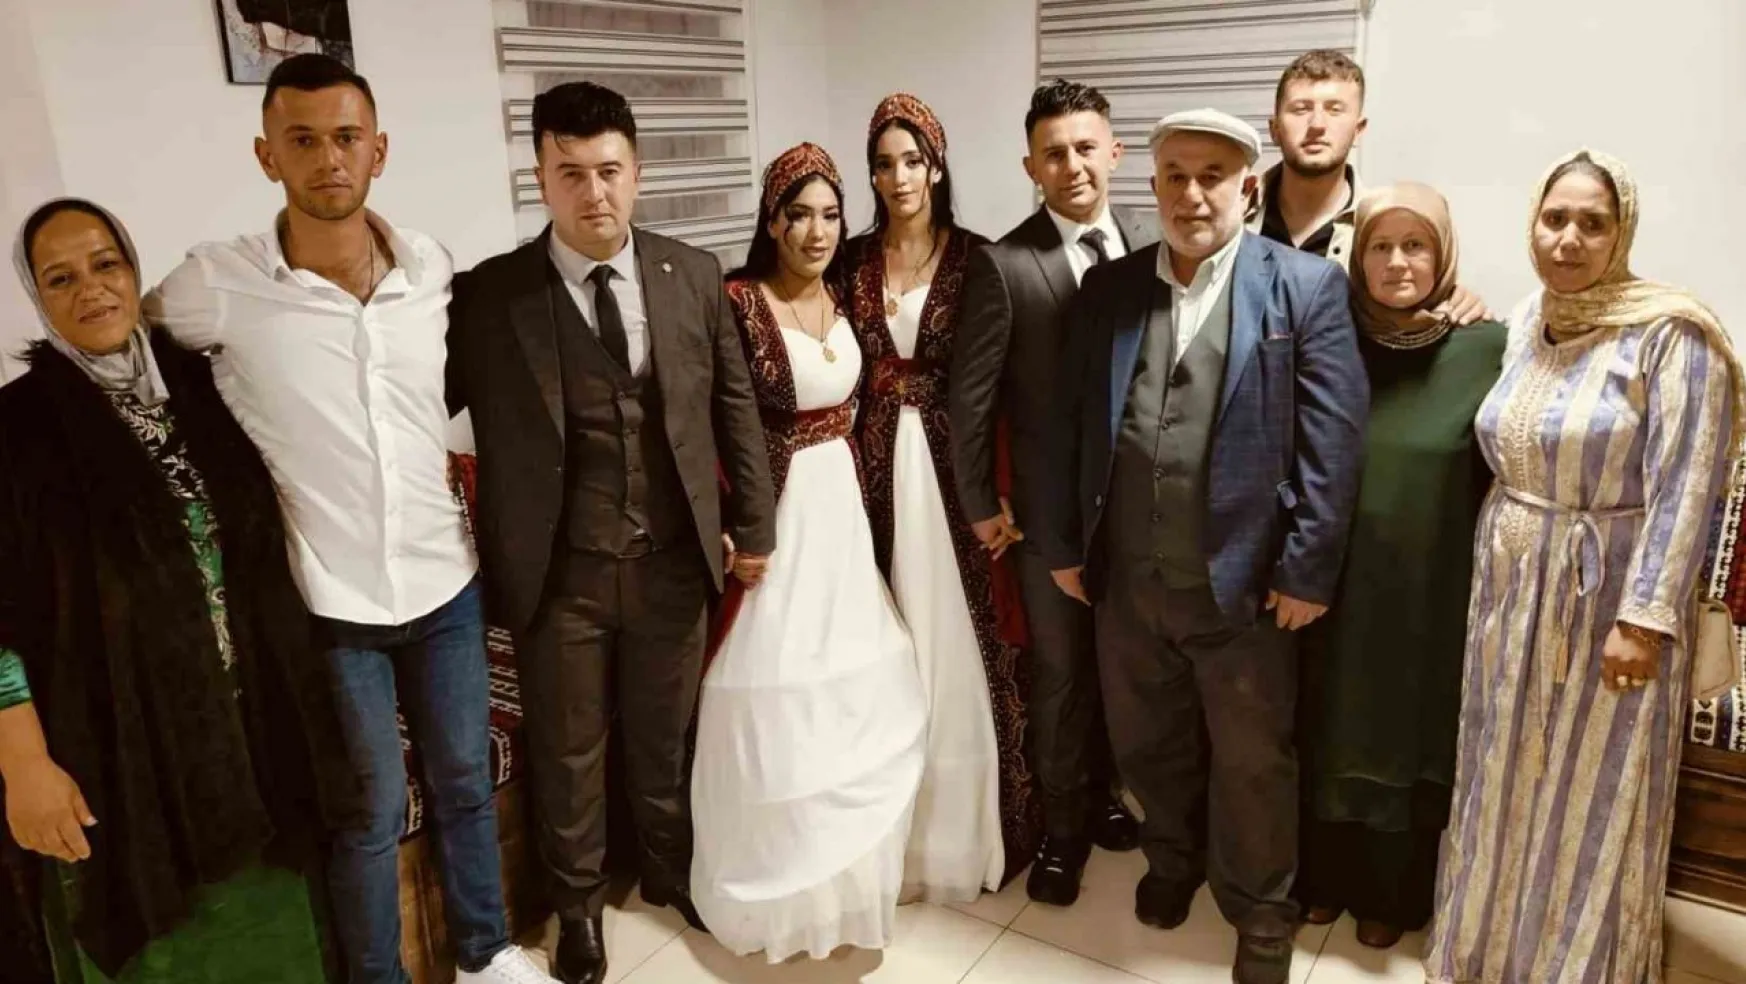 Fas'tan Yozgat'a gelin geldiler, aynı düğünle dünya evine girdiler